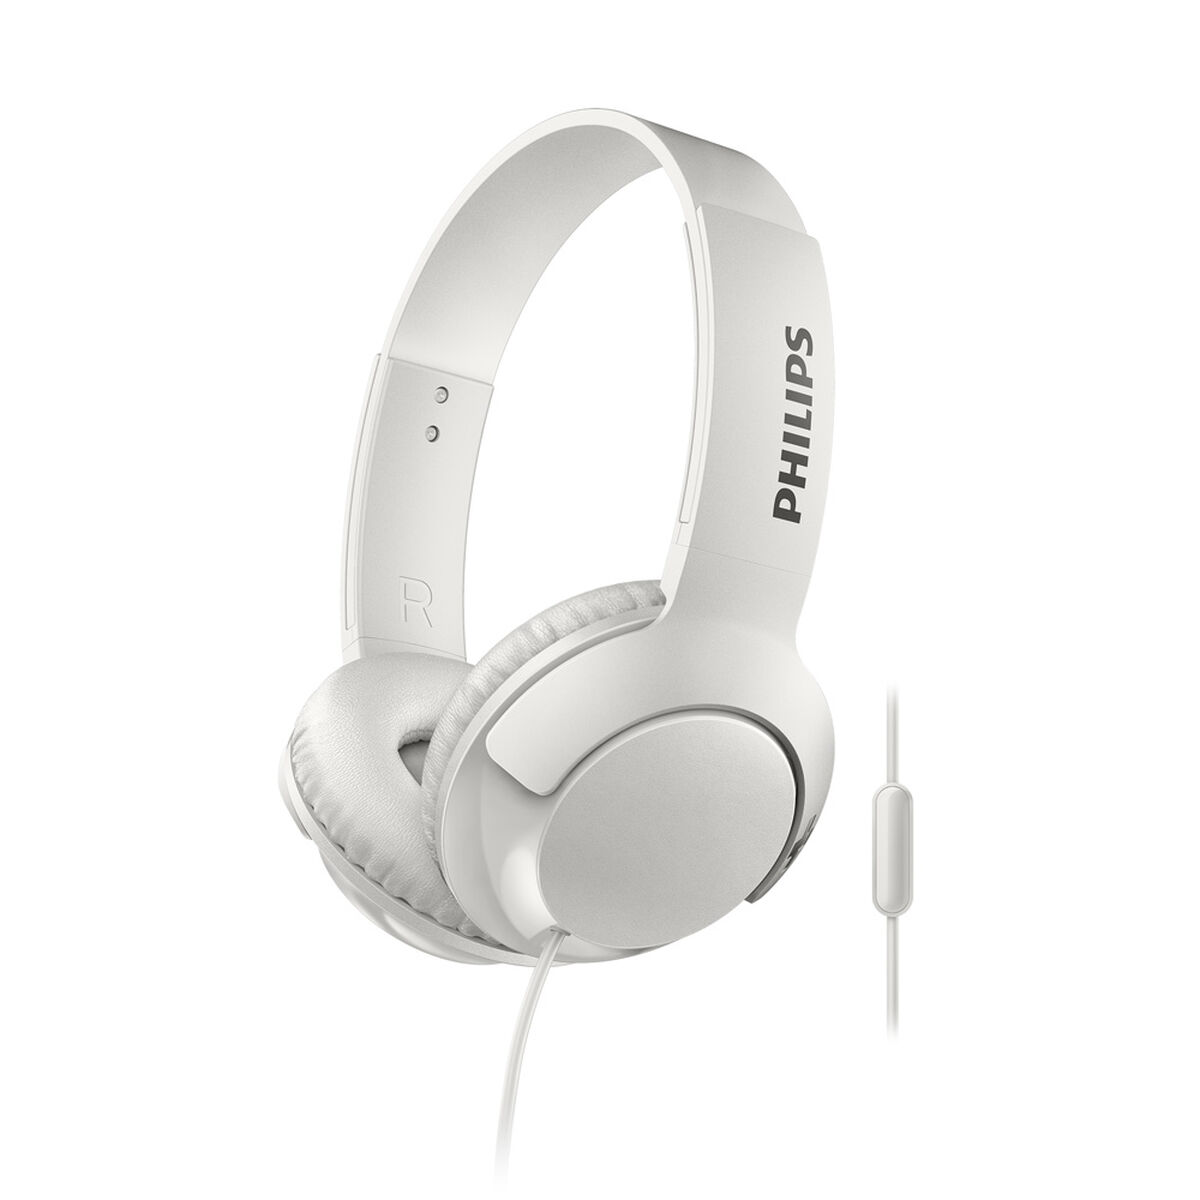 Audífonos Over Ear Philips SHL3075WT BASS+ Blancos